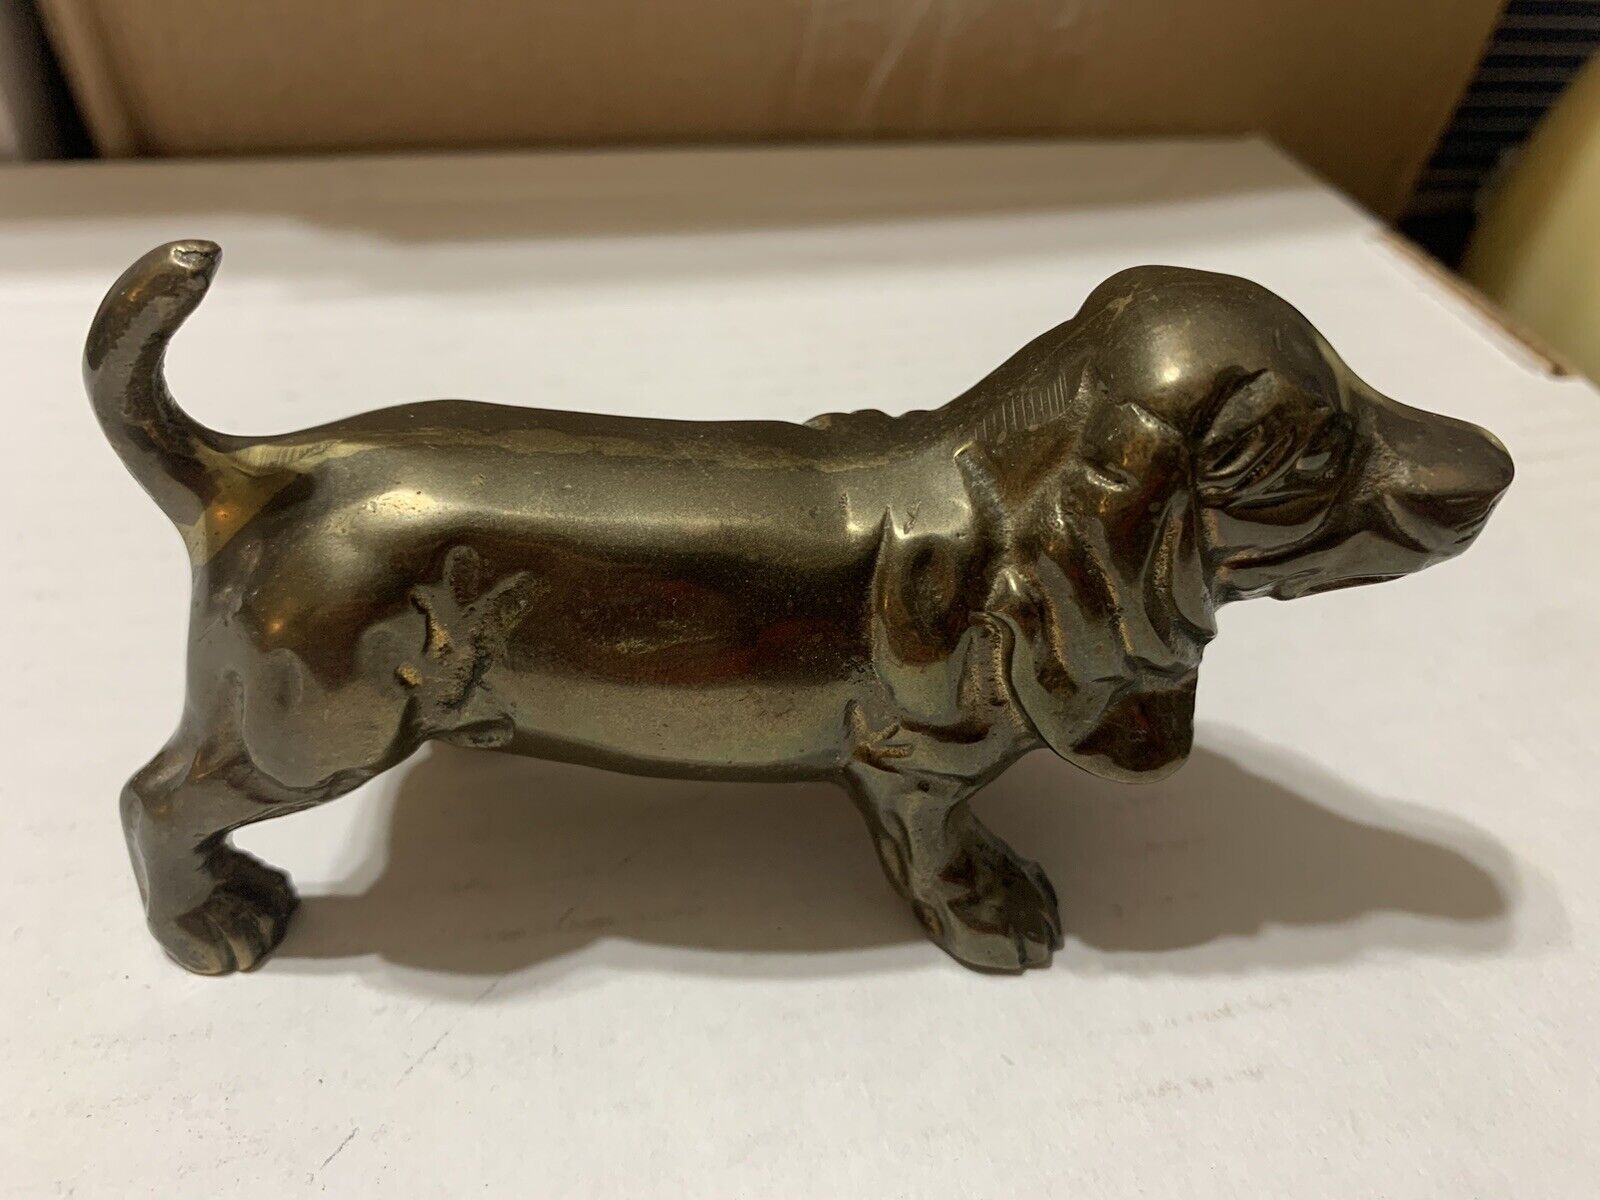 NICE Vintage SOLID Brass Basset Hound Dog Figurine - LOOK